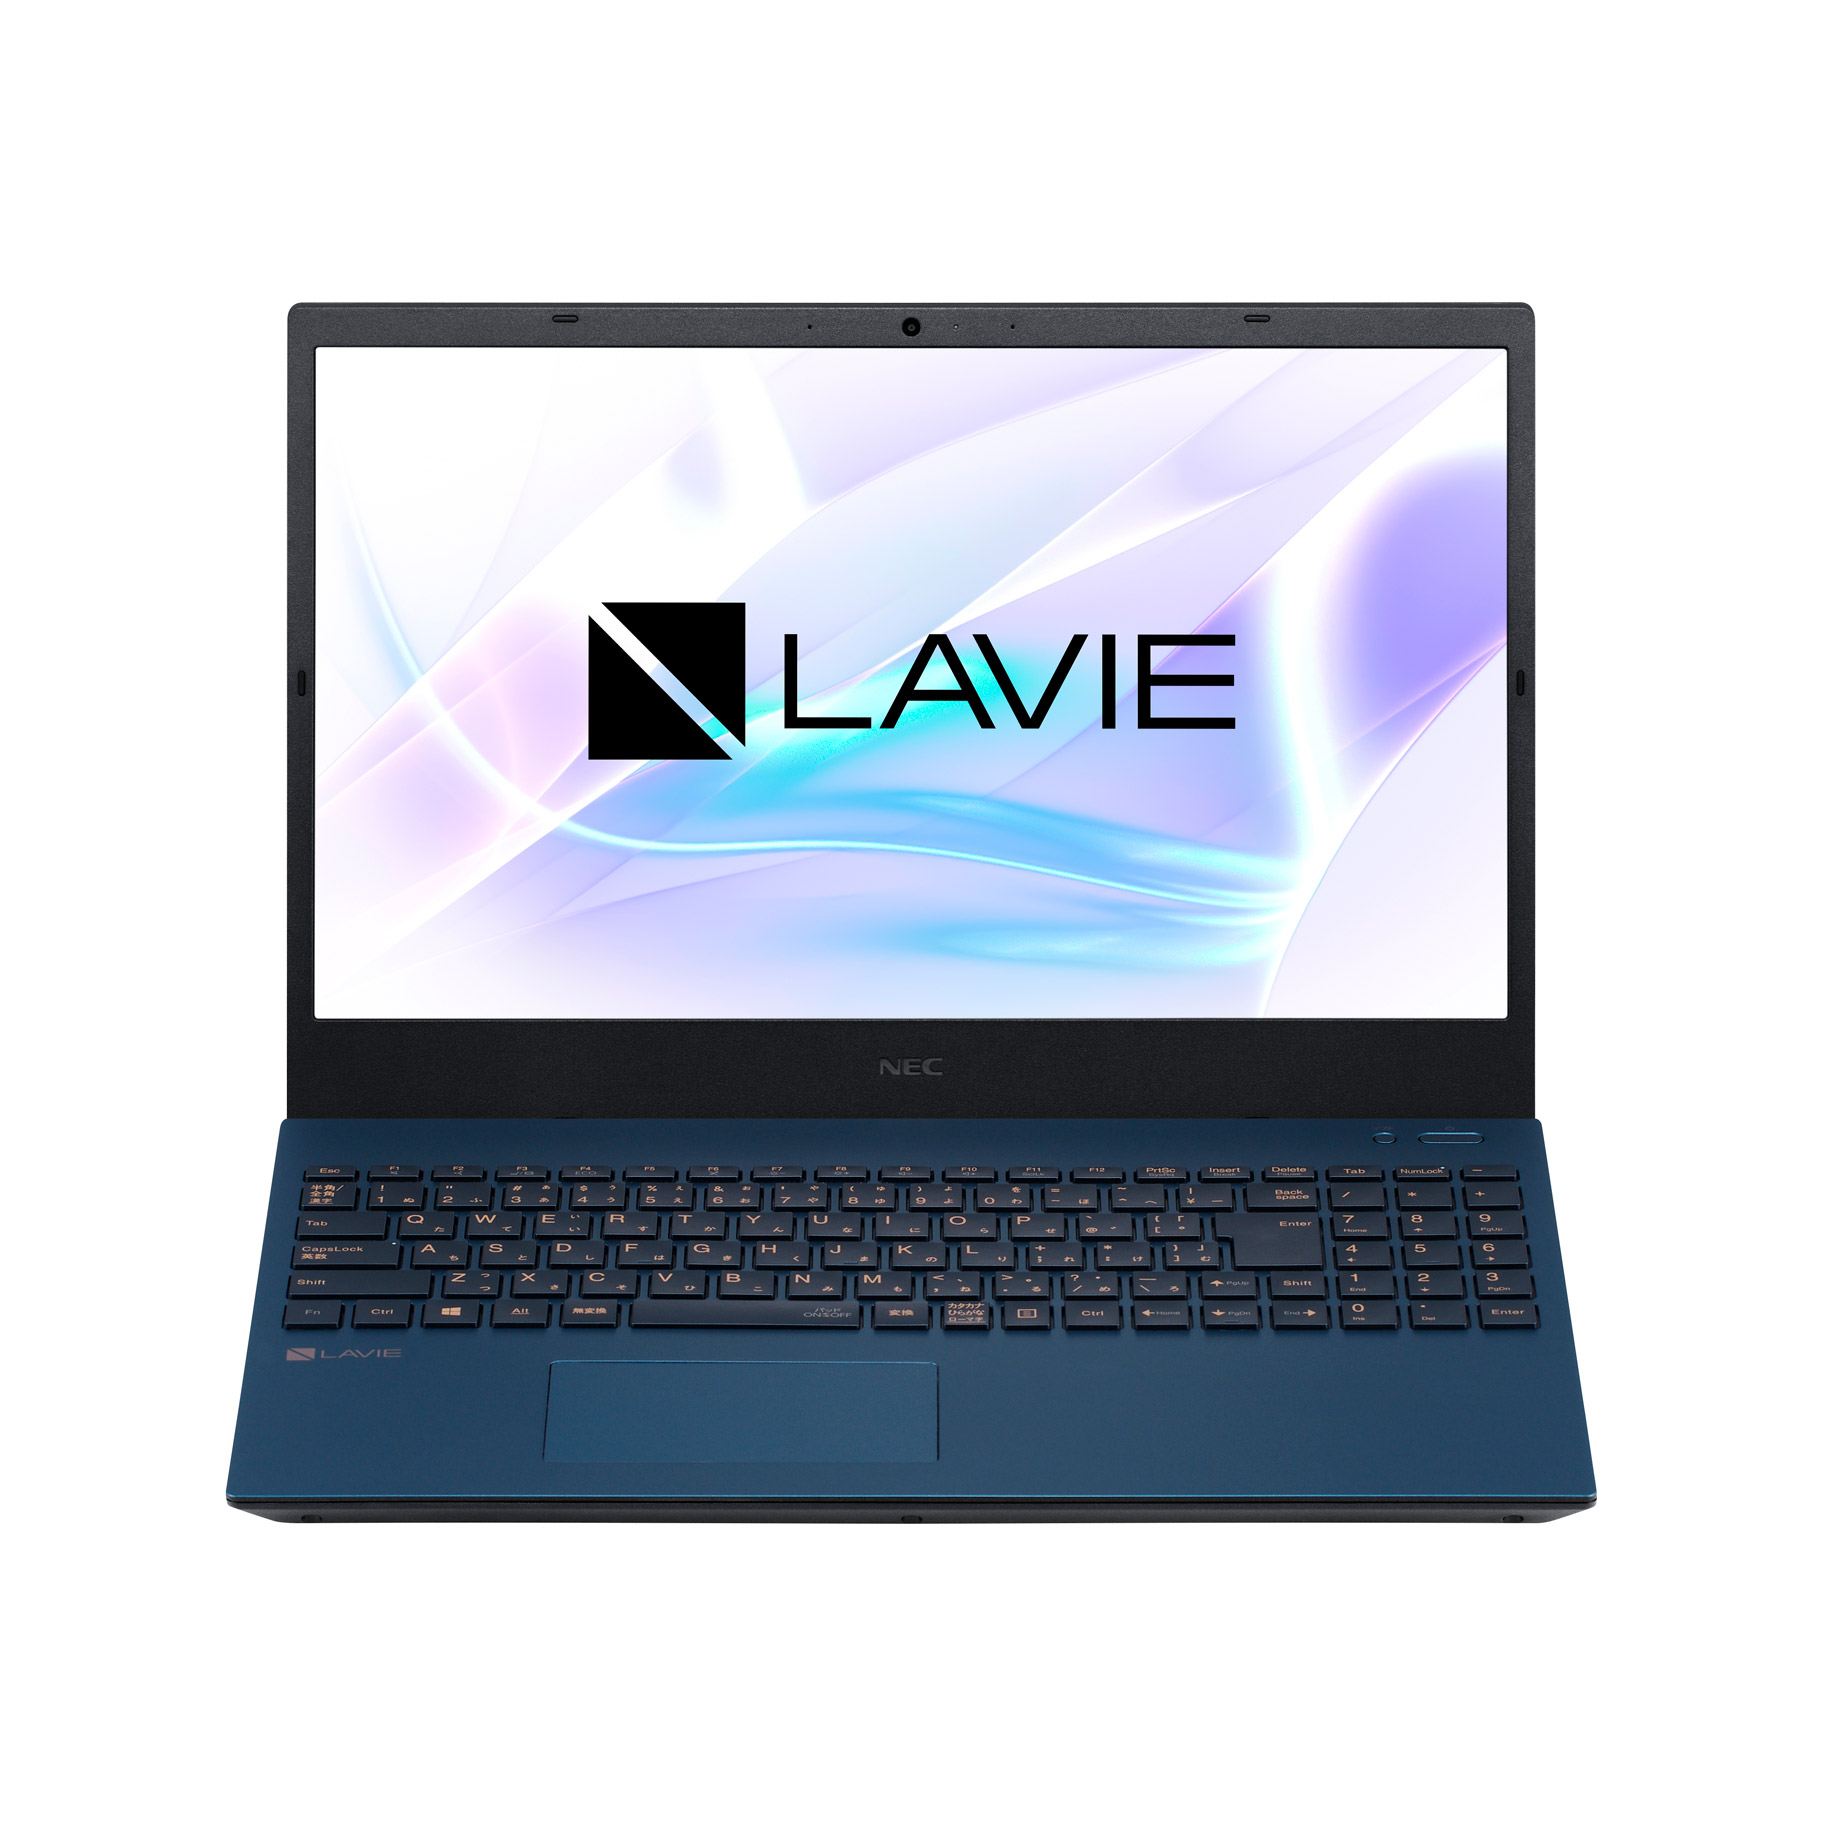 ノートパソコン LAVIE N15シリーズ ネイビーブルー PC-N1536AZL-2C 